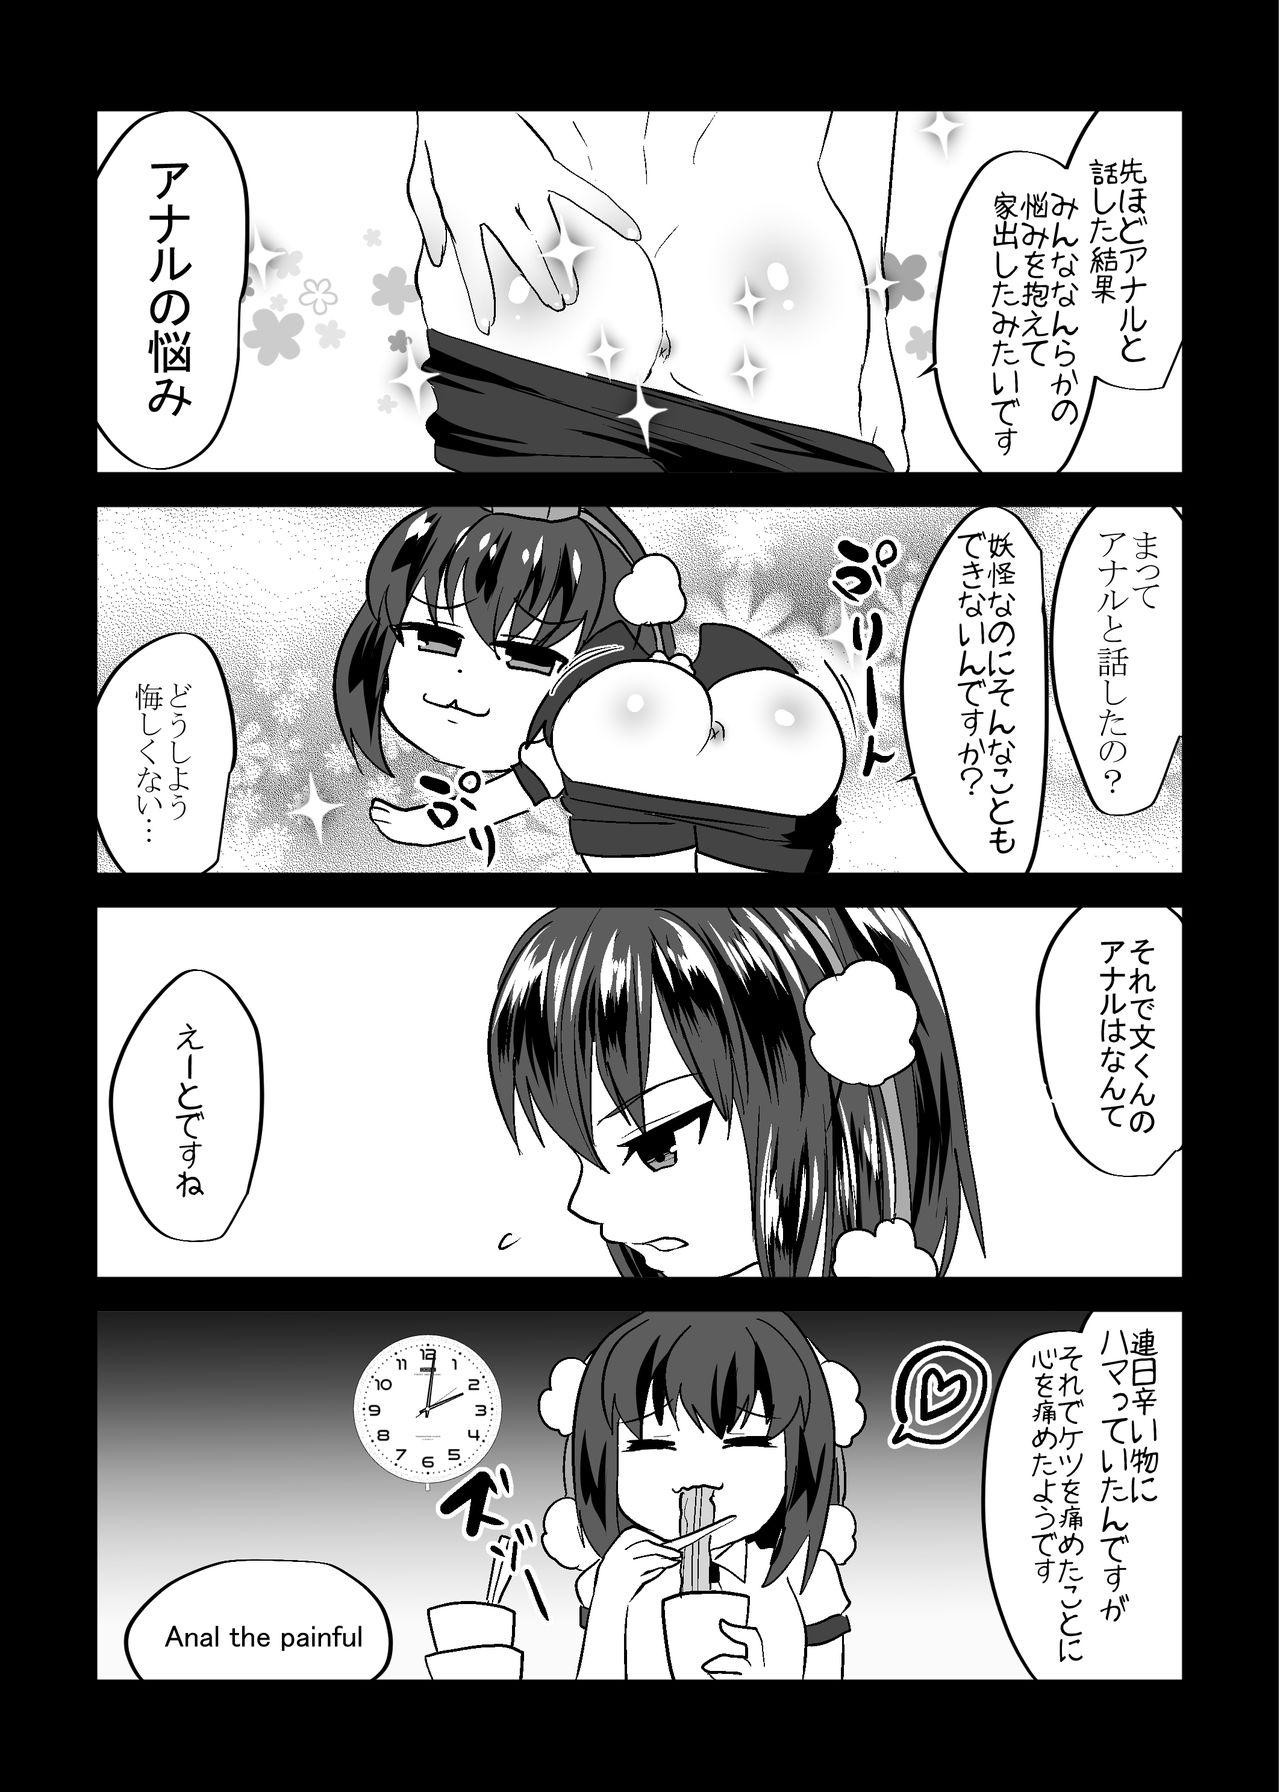 Naked Sex Uchi no * ga iede shimashite - Touhou project Virginity - Page 11